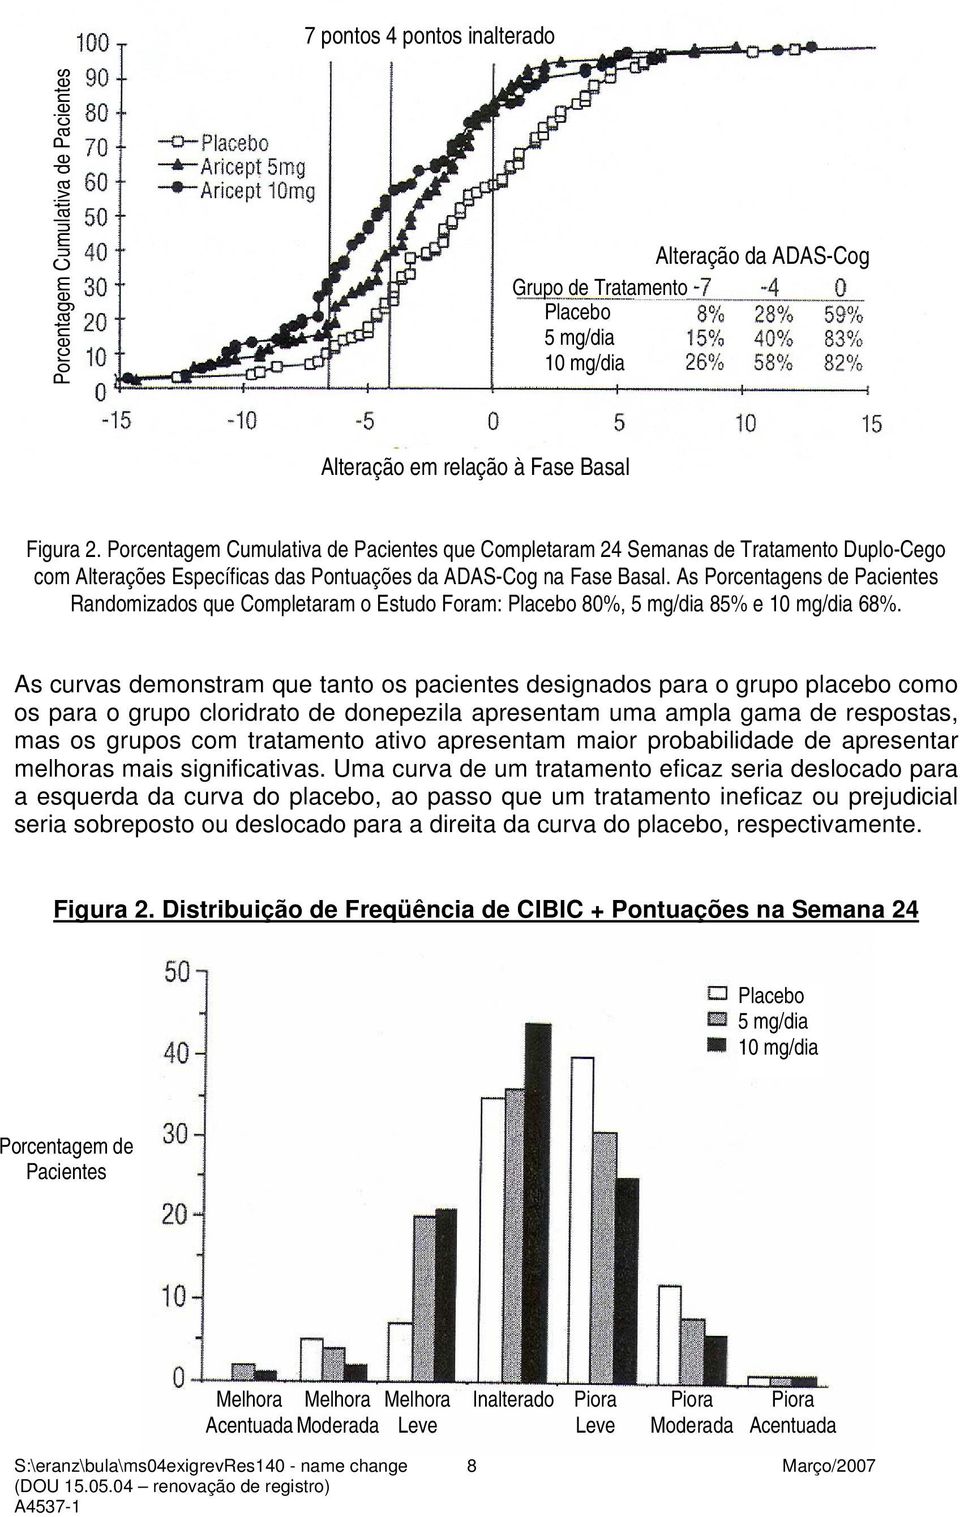 As Porcentagens de Pacientes Randomizados que Completaram o Estudo Foram: Placebo 80%, 5 mg/dia 85% e 10 mg/dia 68%.